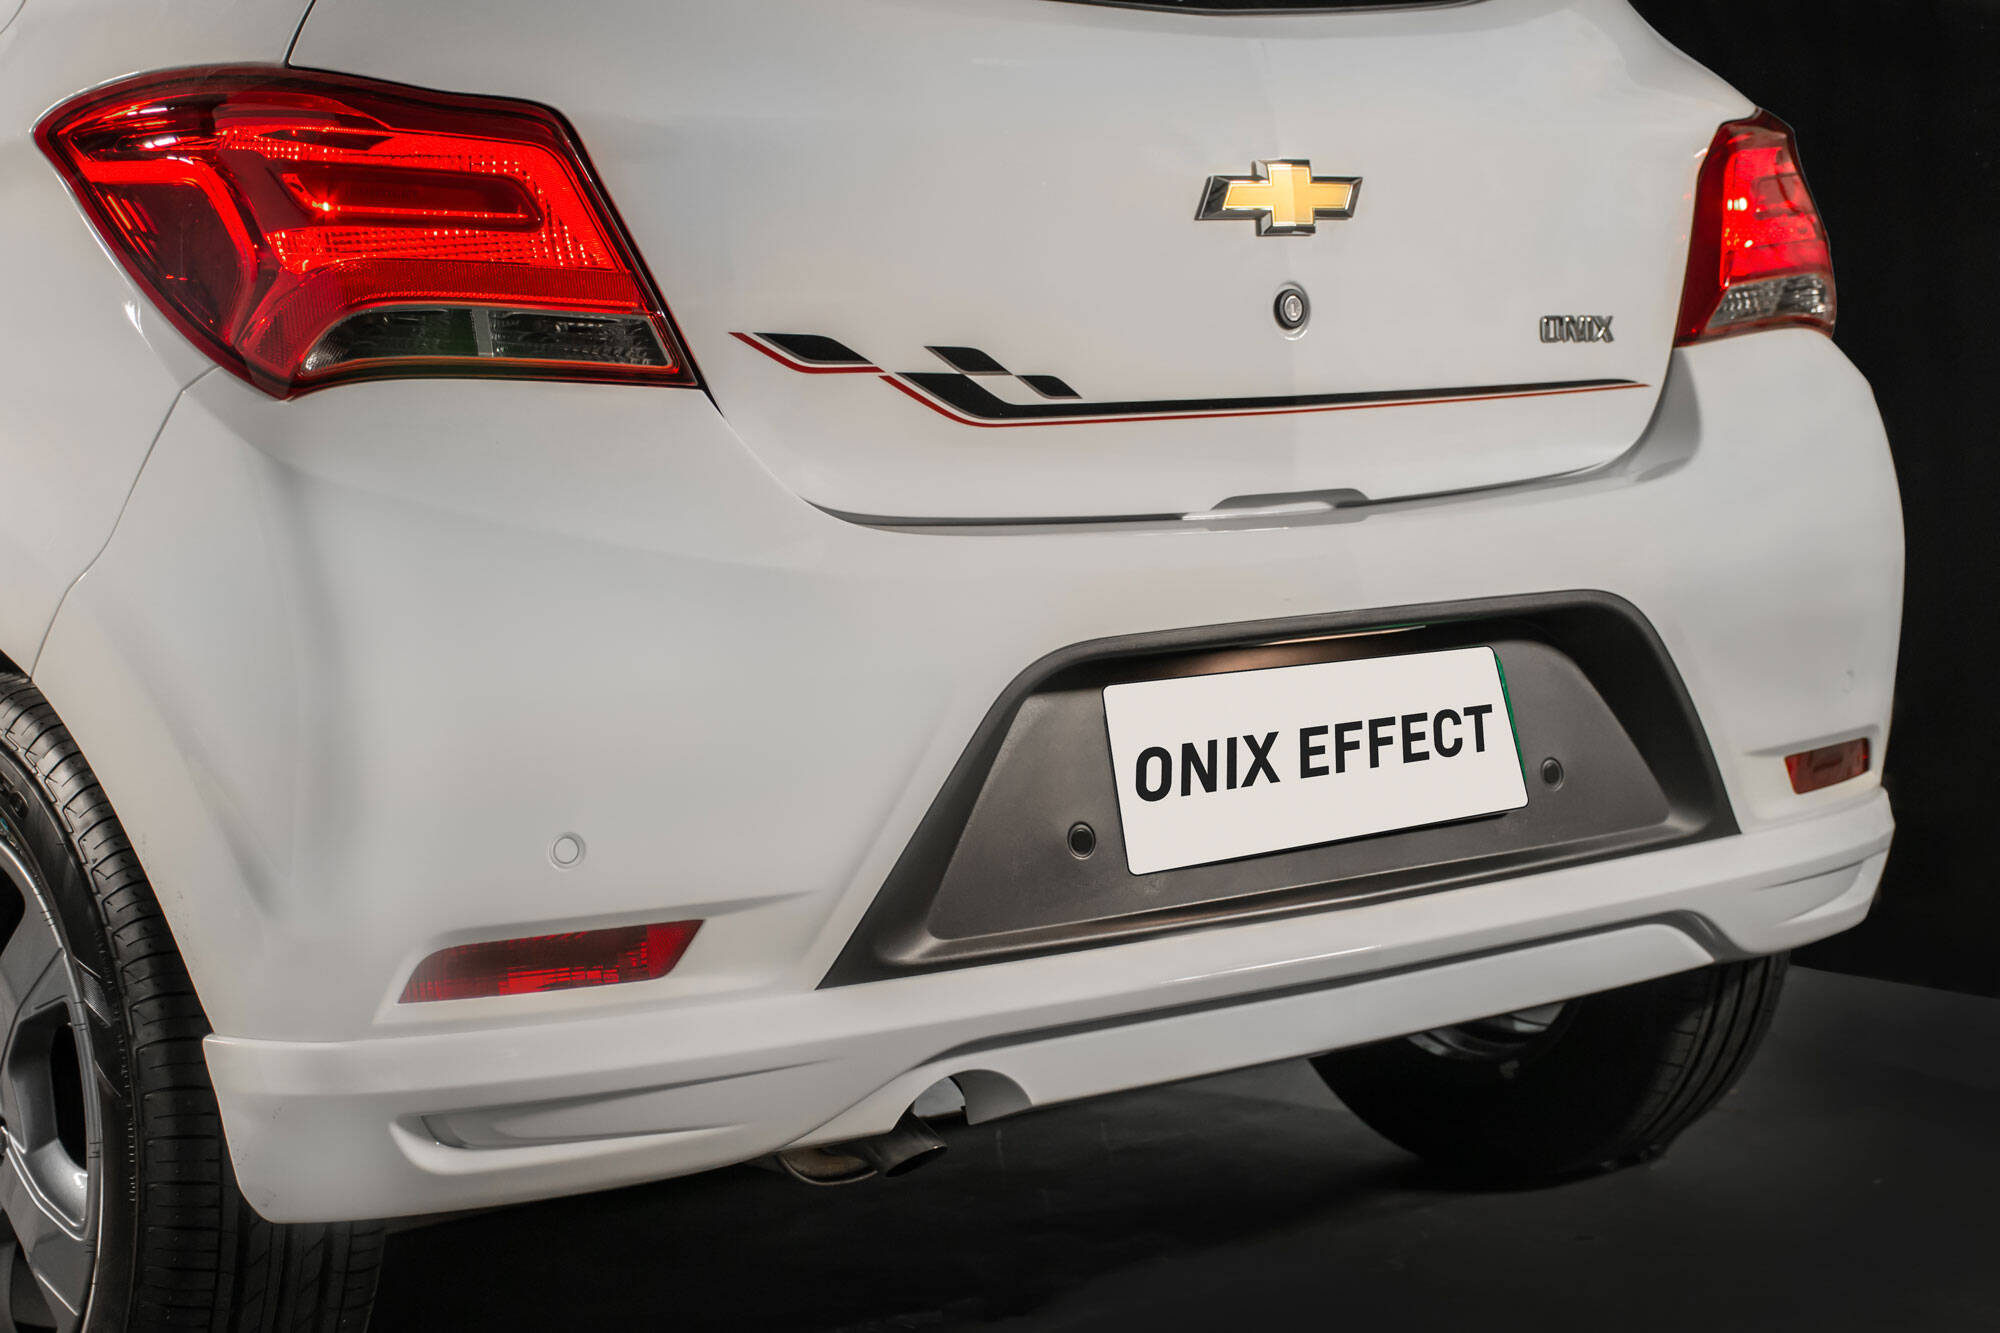 Chevrolet Onix Effect. Foto: Divulgação/General Motors